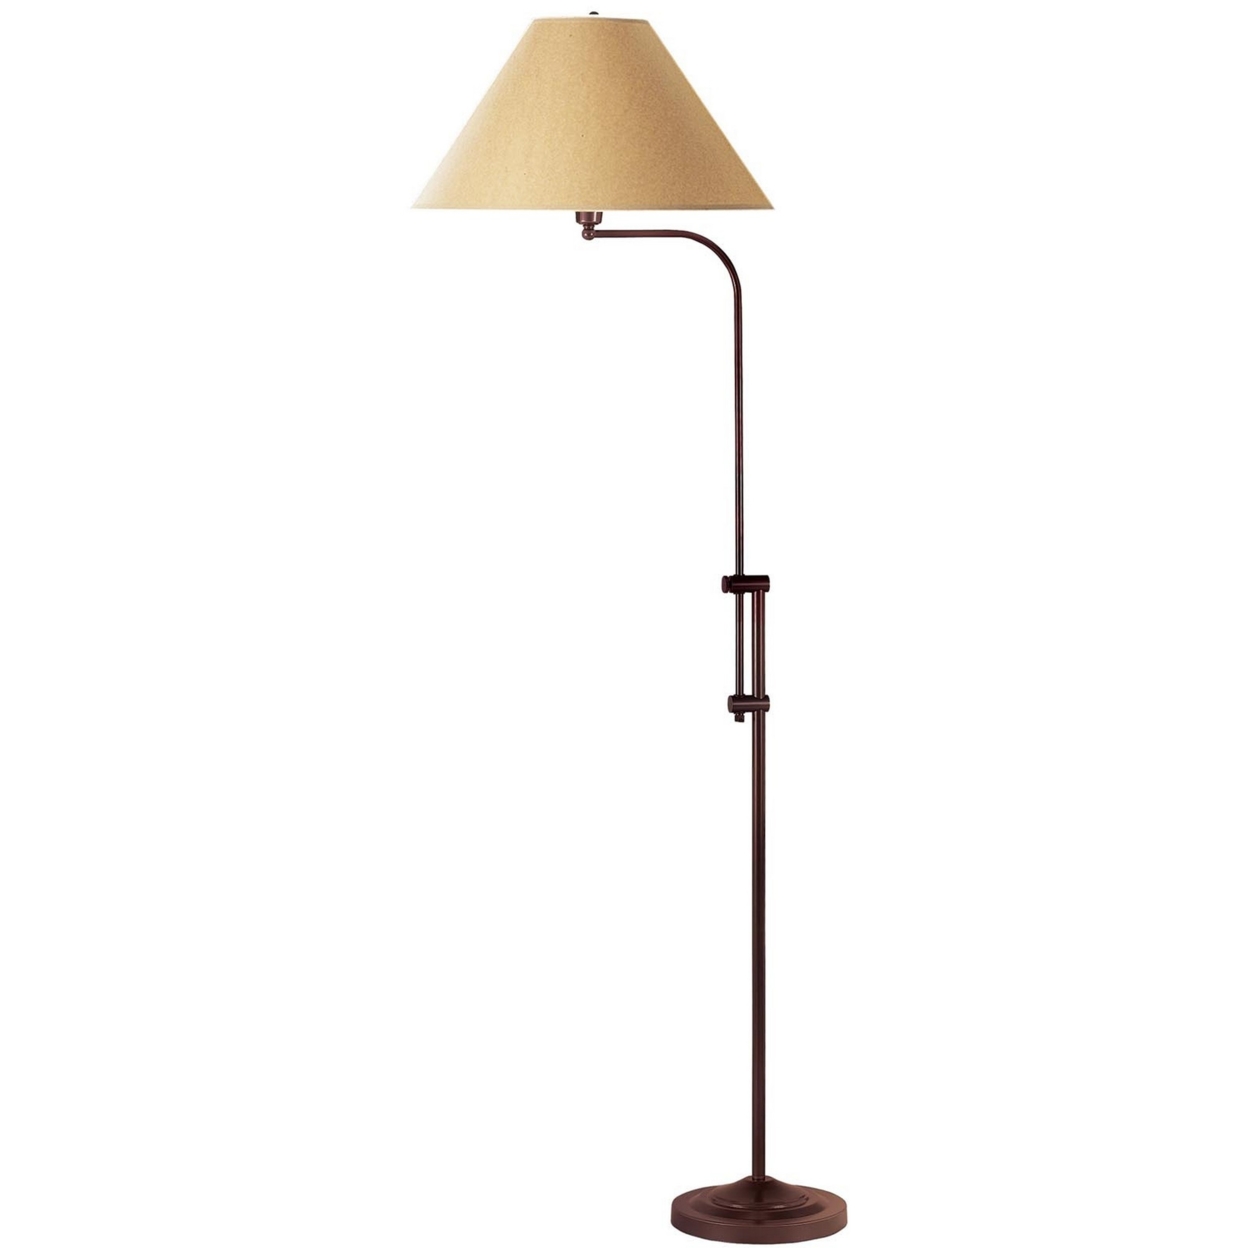 3 Way Metal Floor Lamp With And Adjustable Height Mechanism, Brown- Saltoro Sherpi